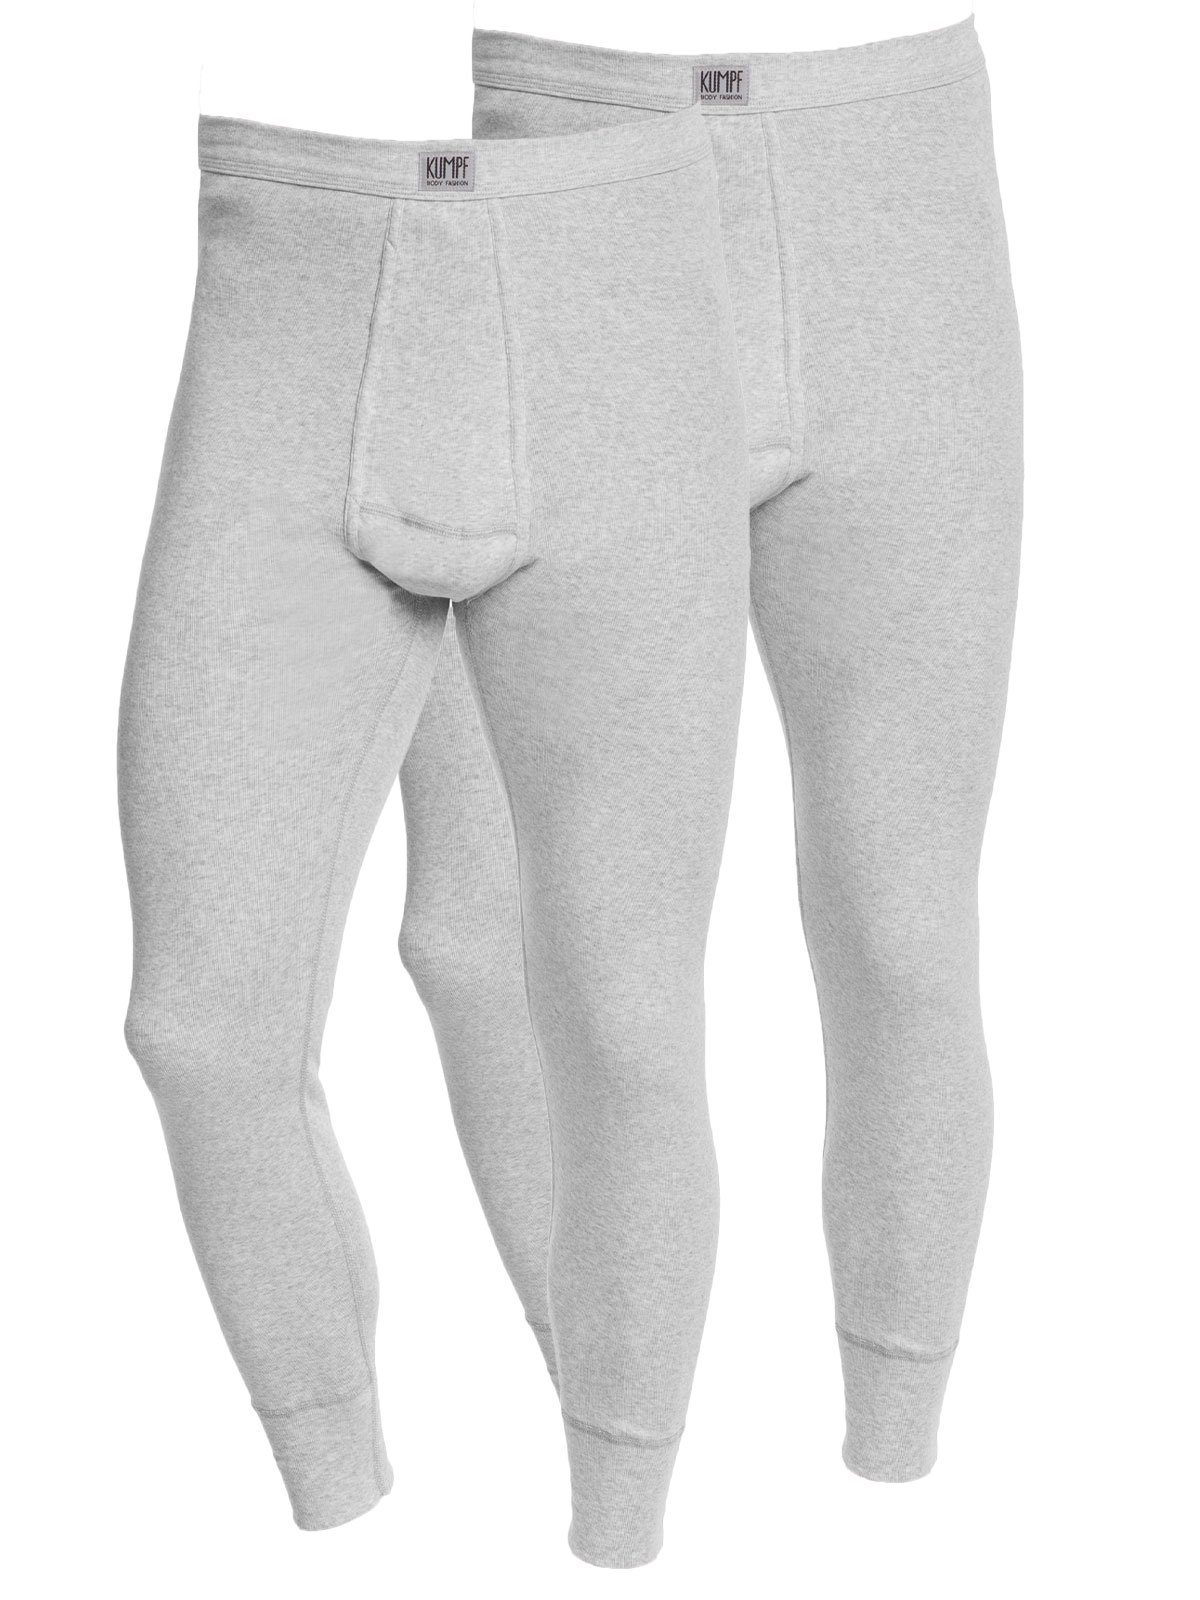 KUMPF Lange Unterhose 2er Sparpack Herren Unterhose Workerwear (Spar-Set, 2-St) mit eingriff kiesel-melange | Lange Unterhosen